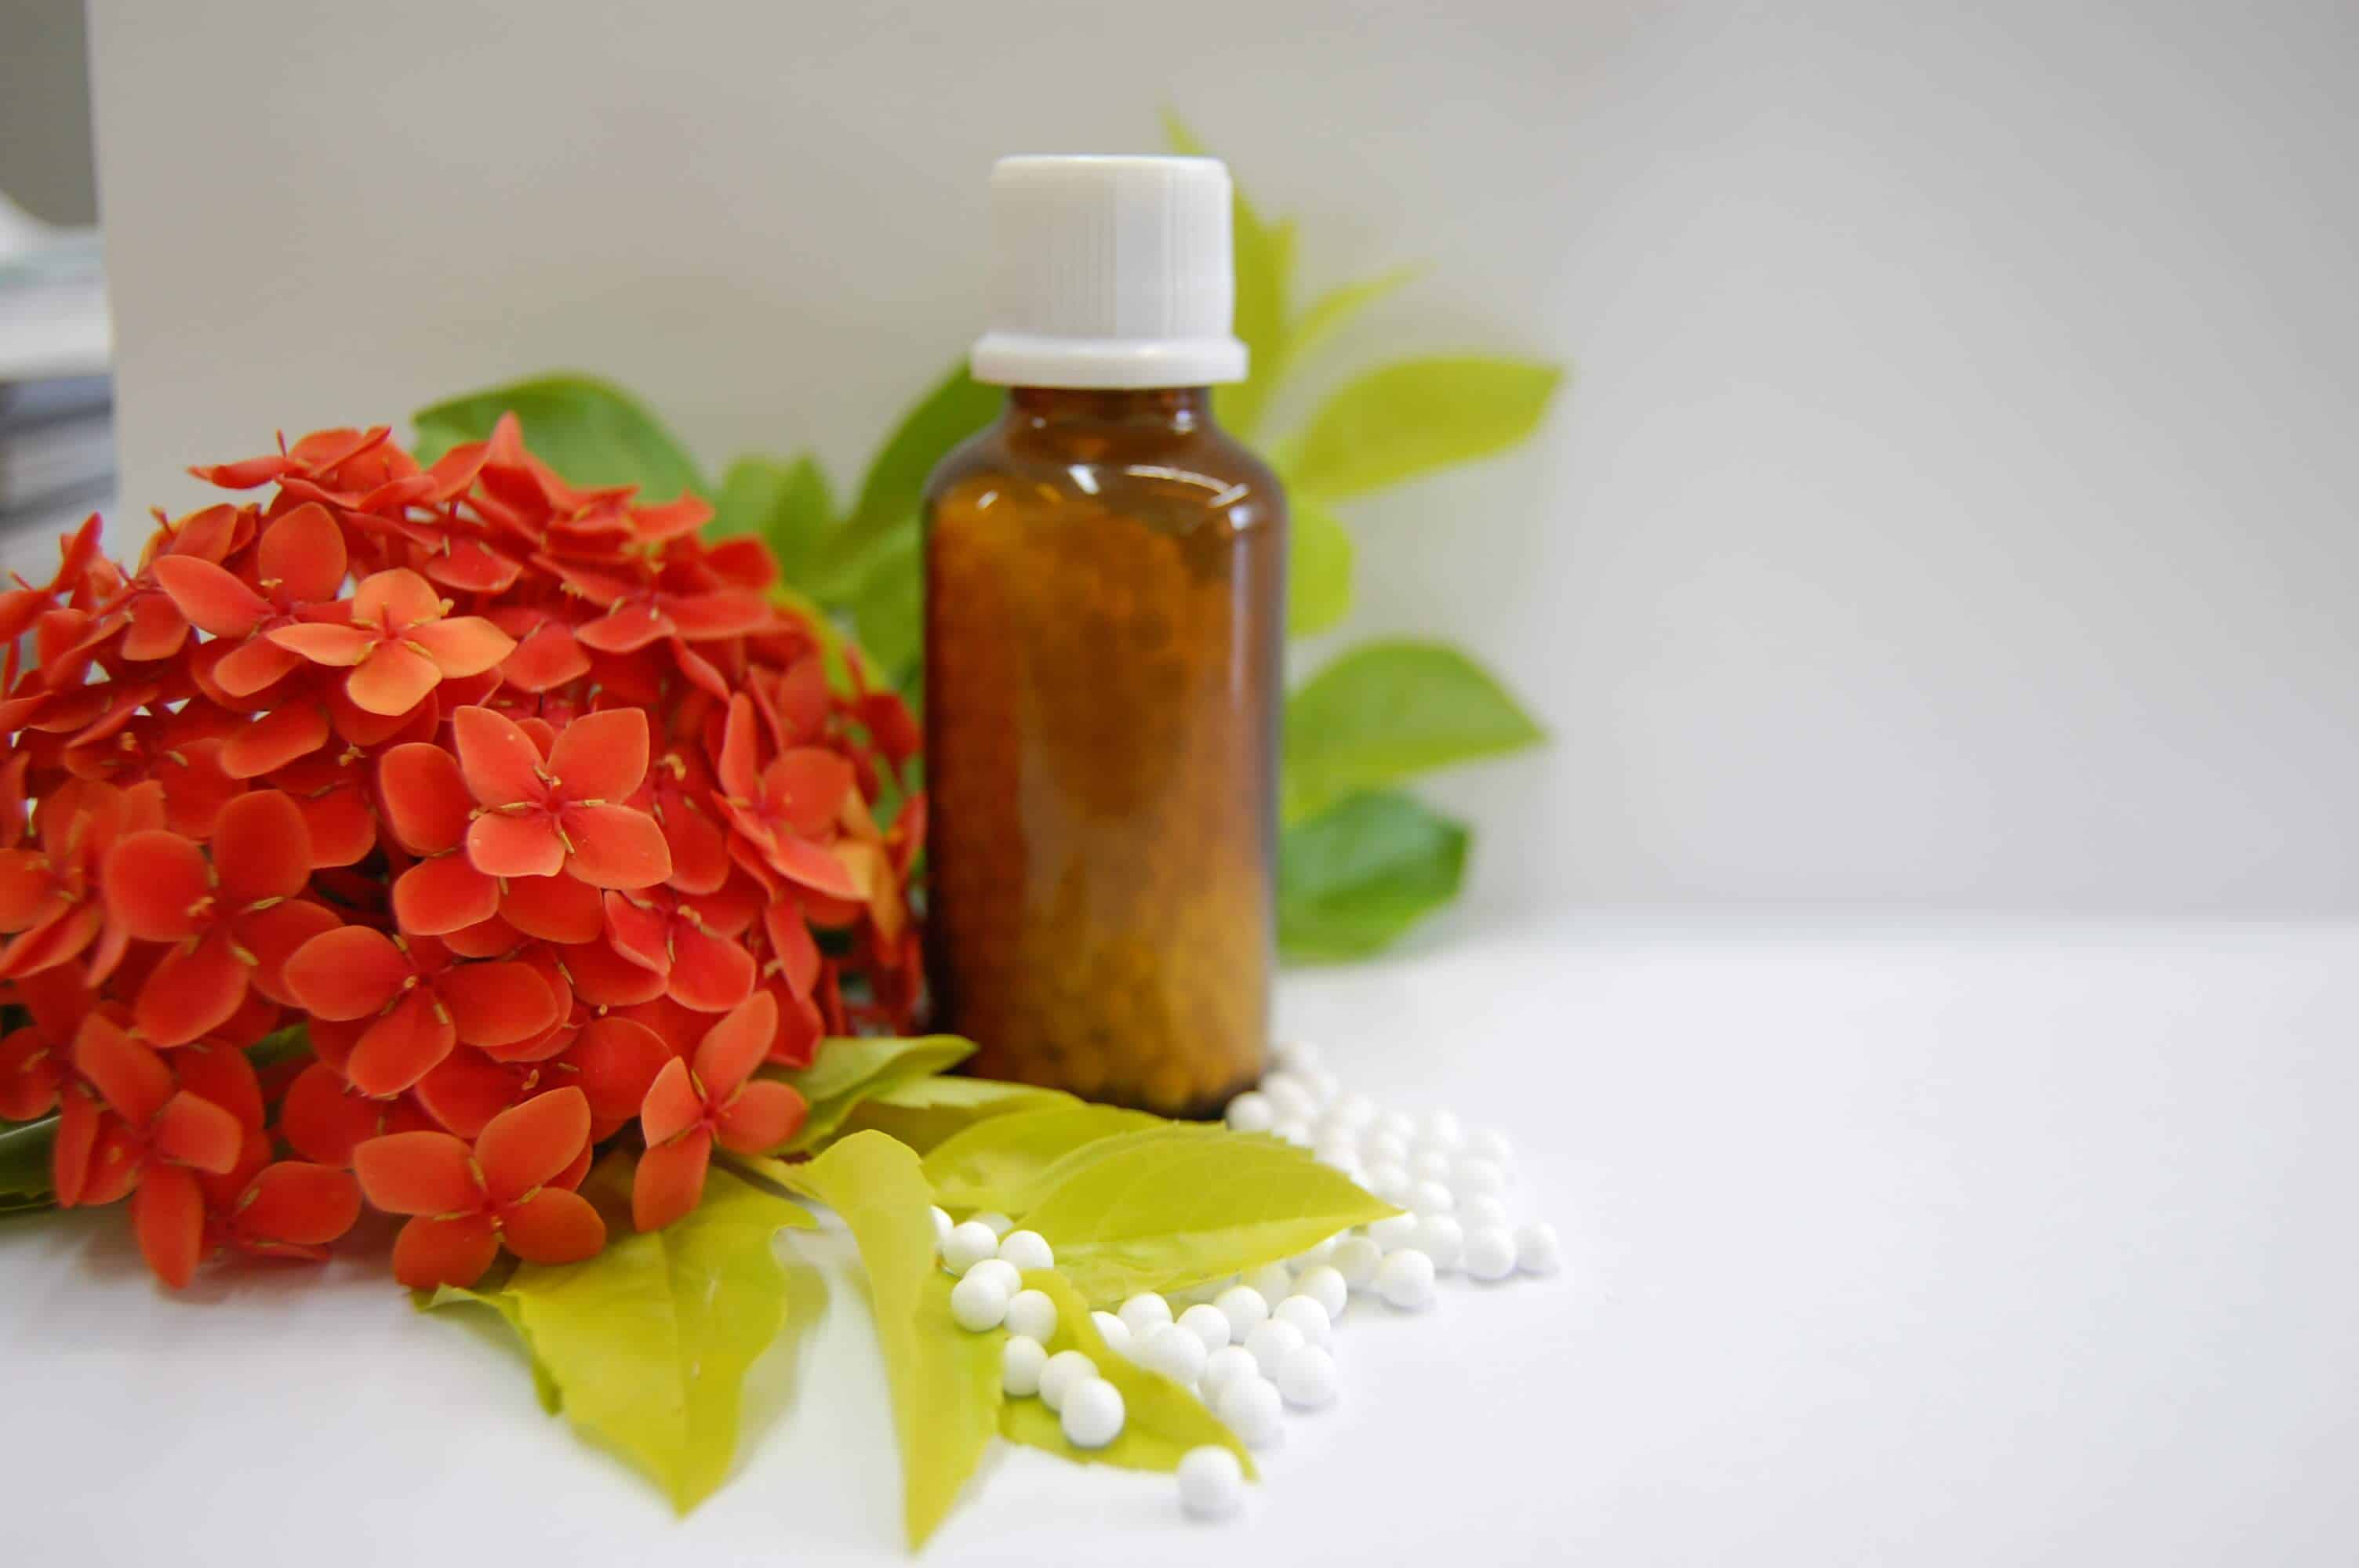 Resultado de imagem para Tratar das plantas com homeopatia